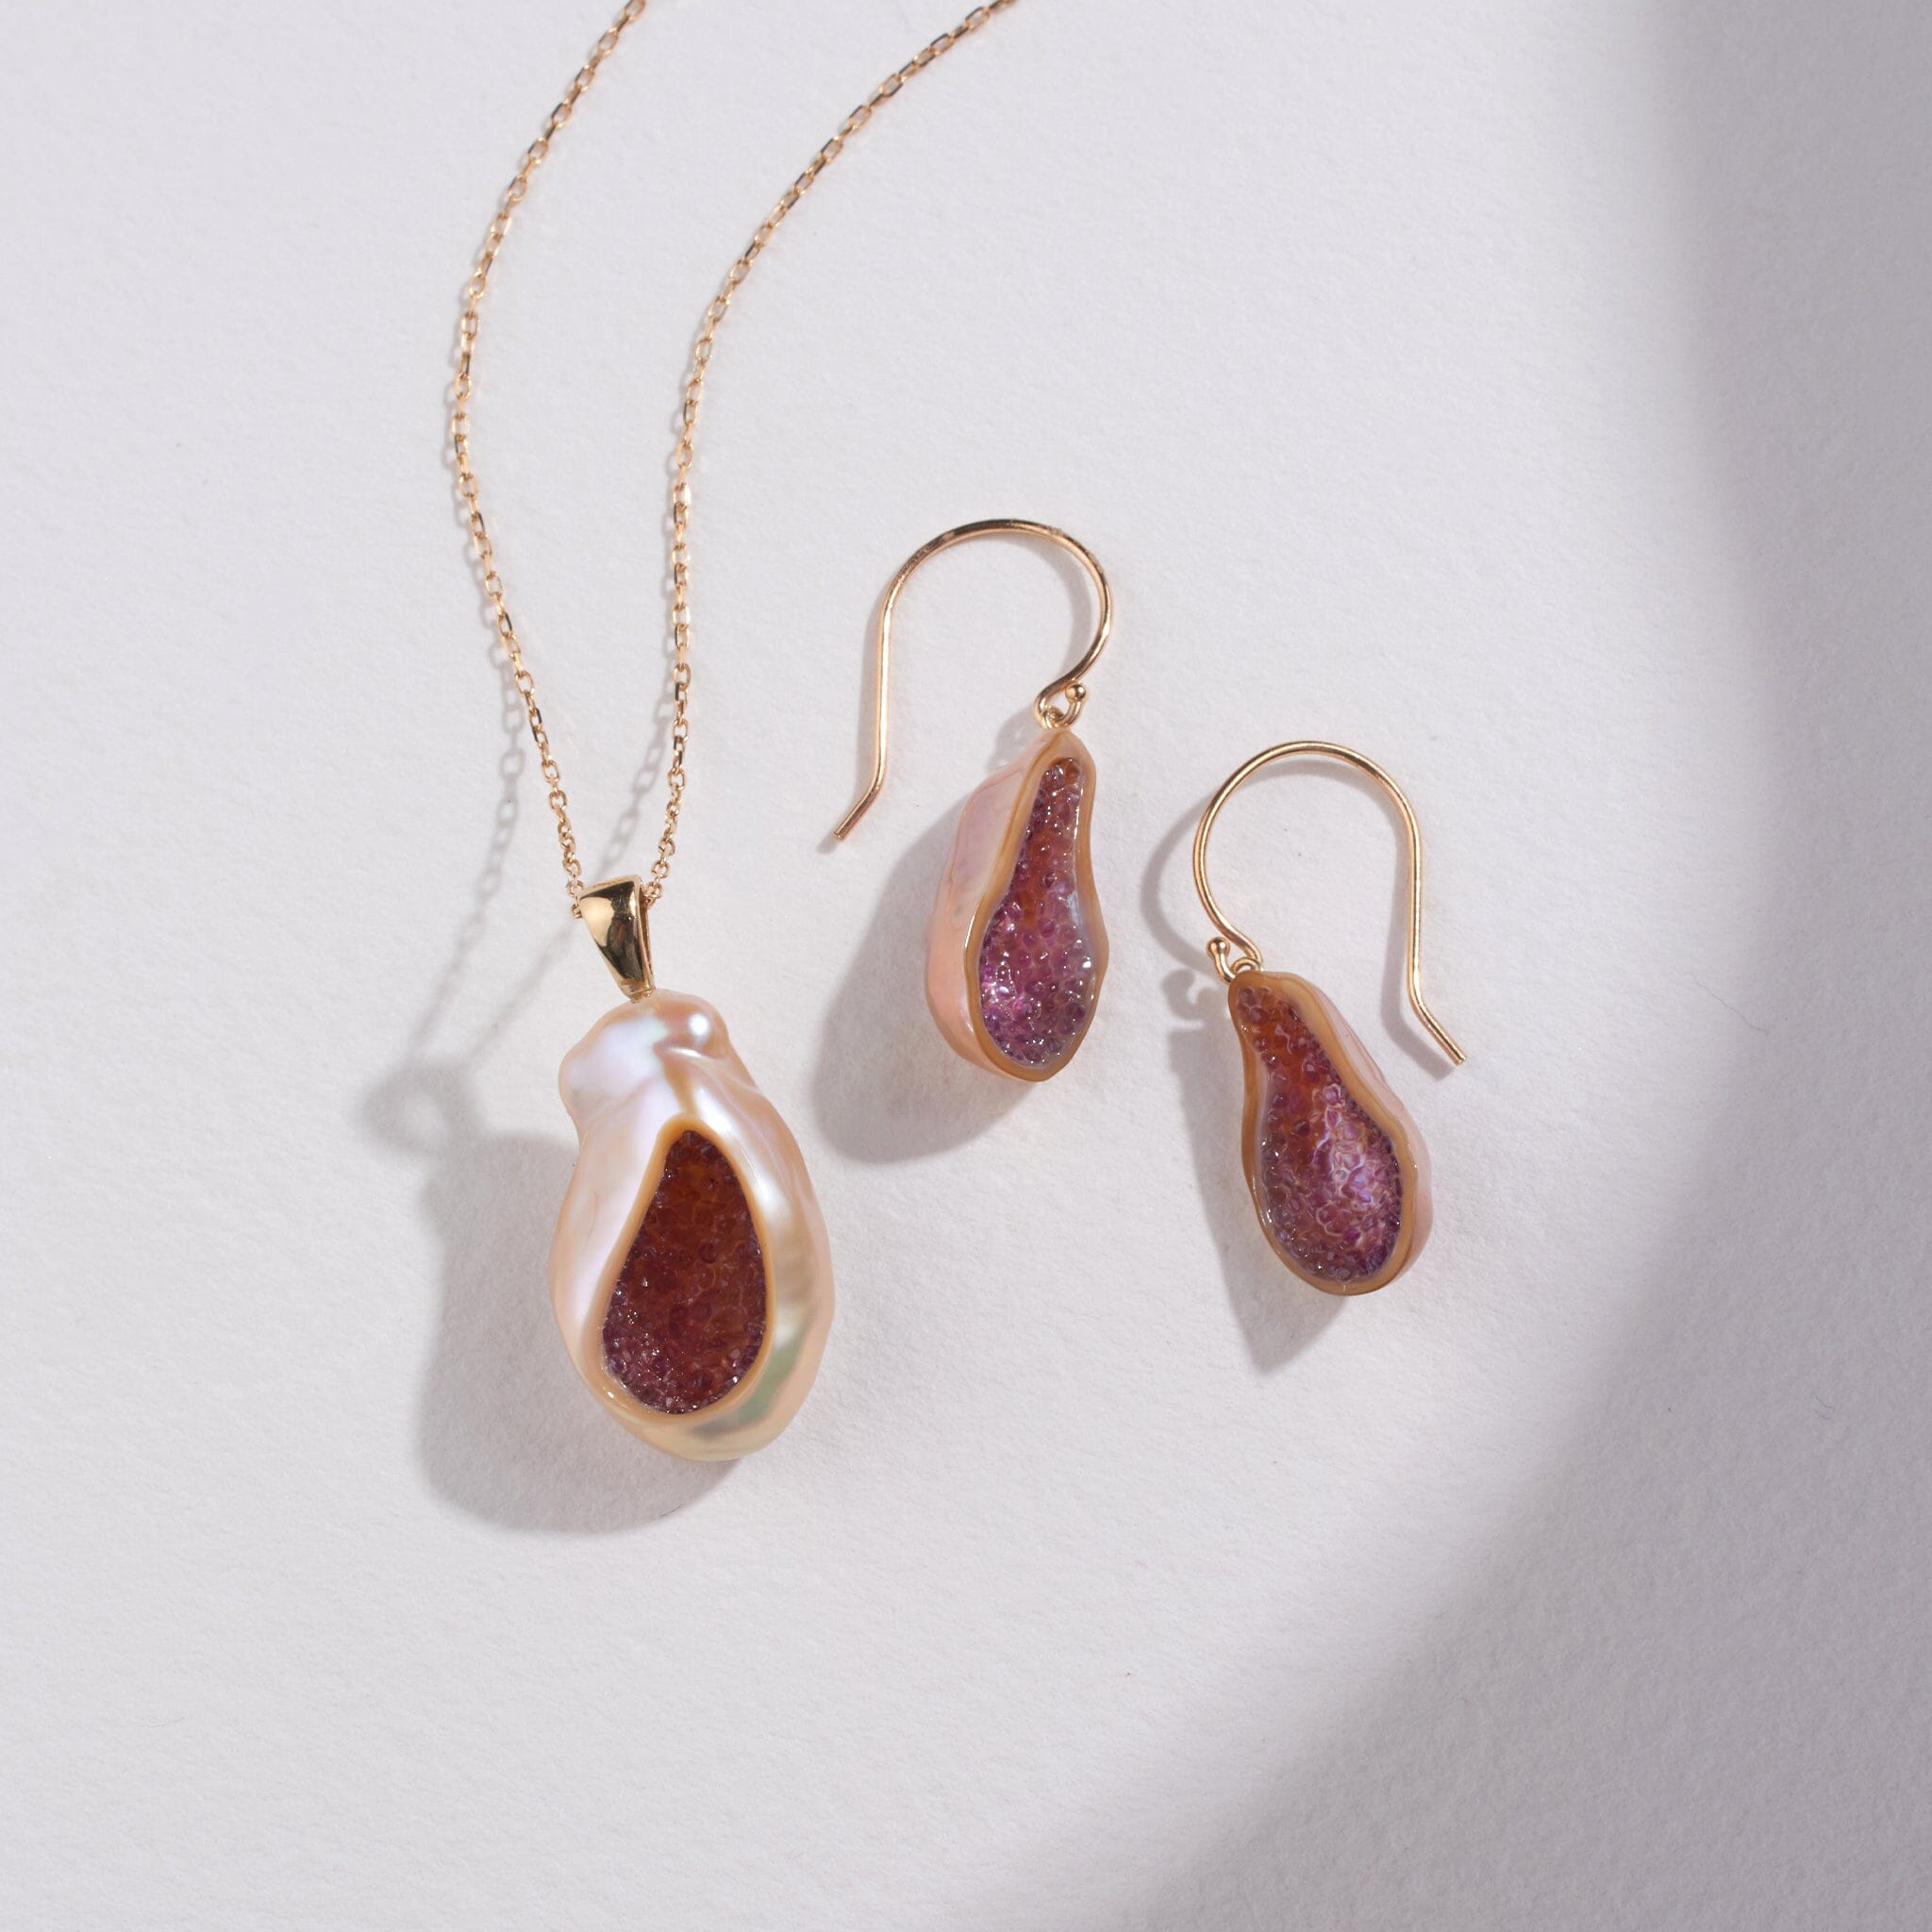 Freshwater Souffle Pearl Geode Earrings & Finestrino Pendant Set with Amethyst - little h jewelry